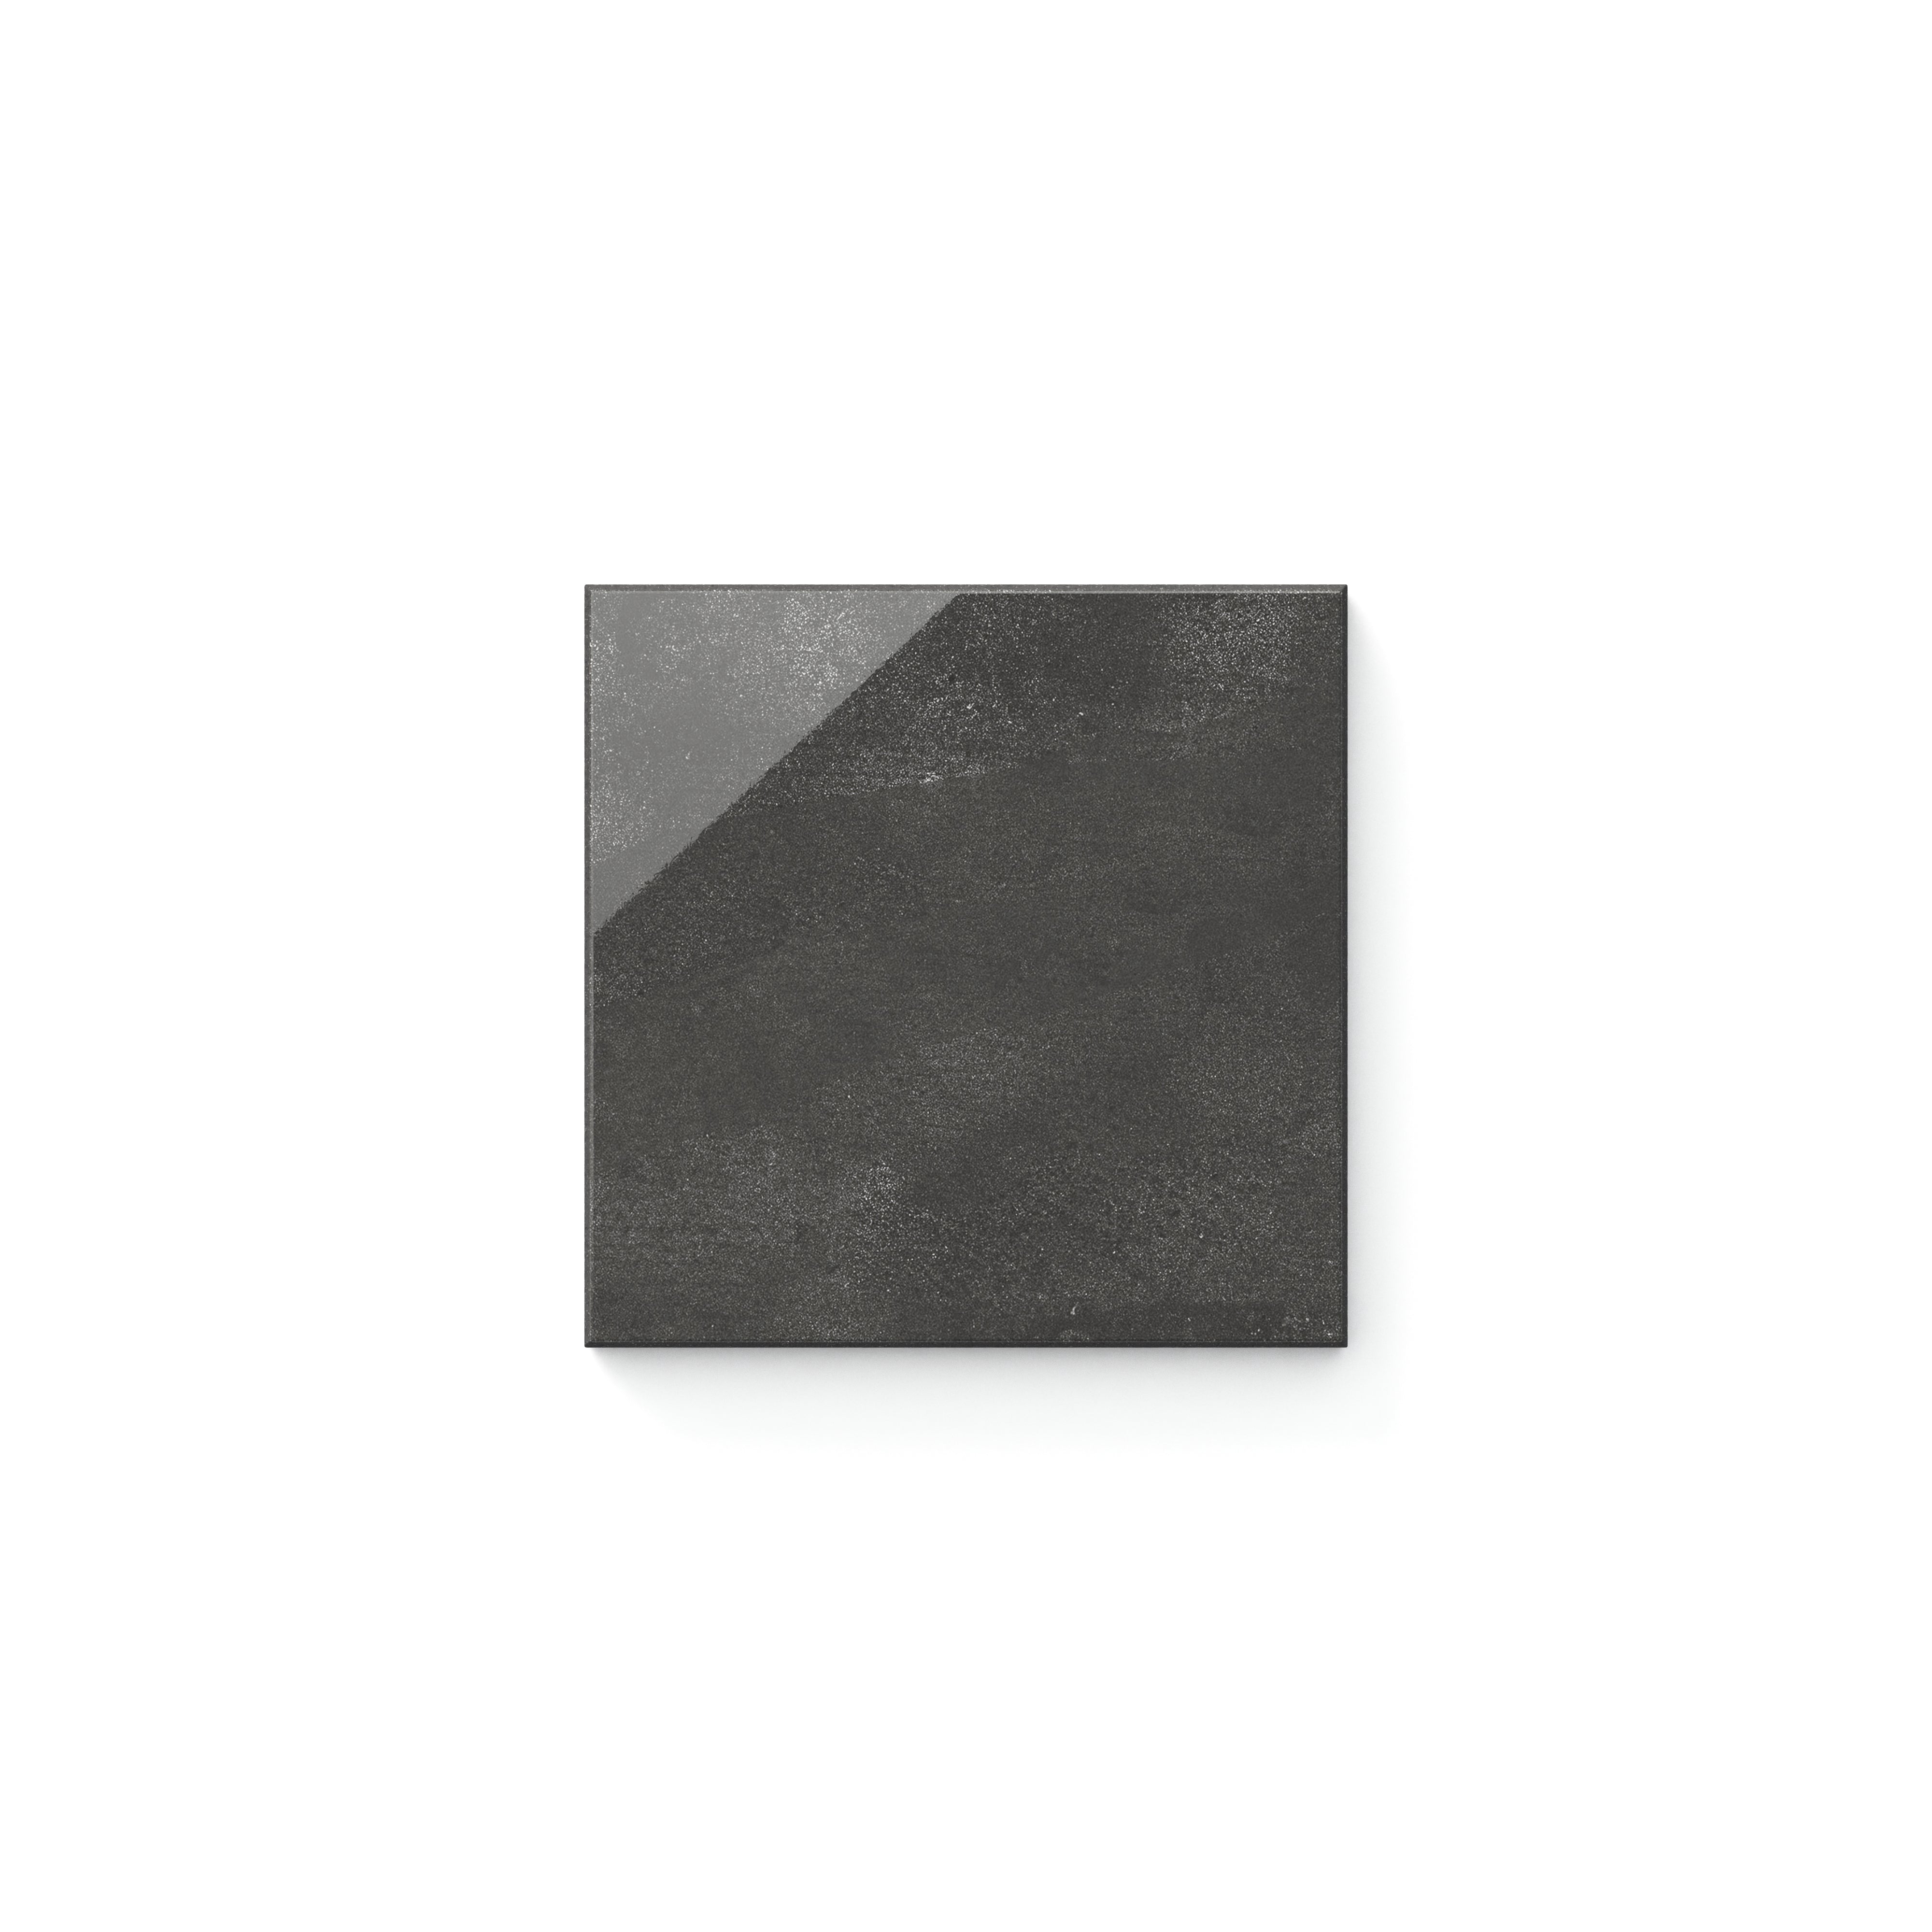 Ramsey Polished Coal 4x4 Tile Sample